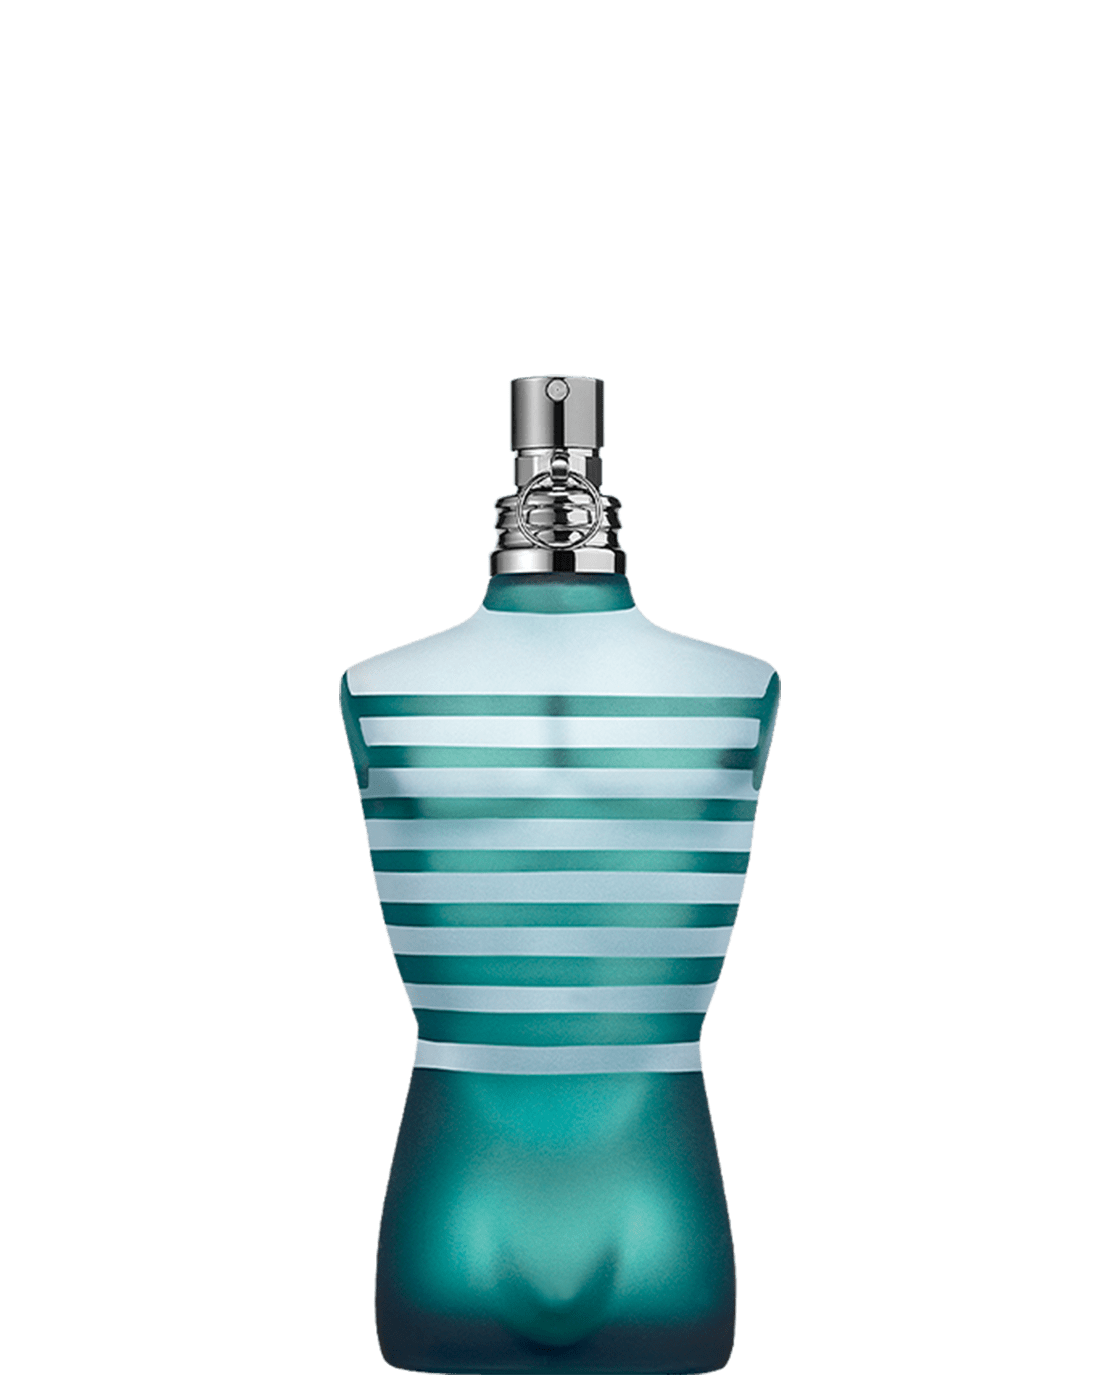 Jean Paul Gaultier Le Beau Man Eau de Parfum Intense 75ml